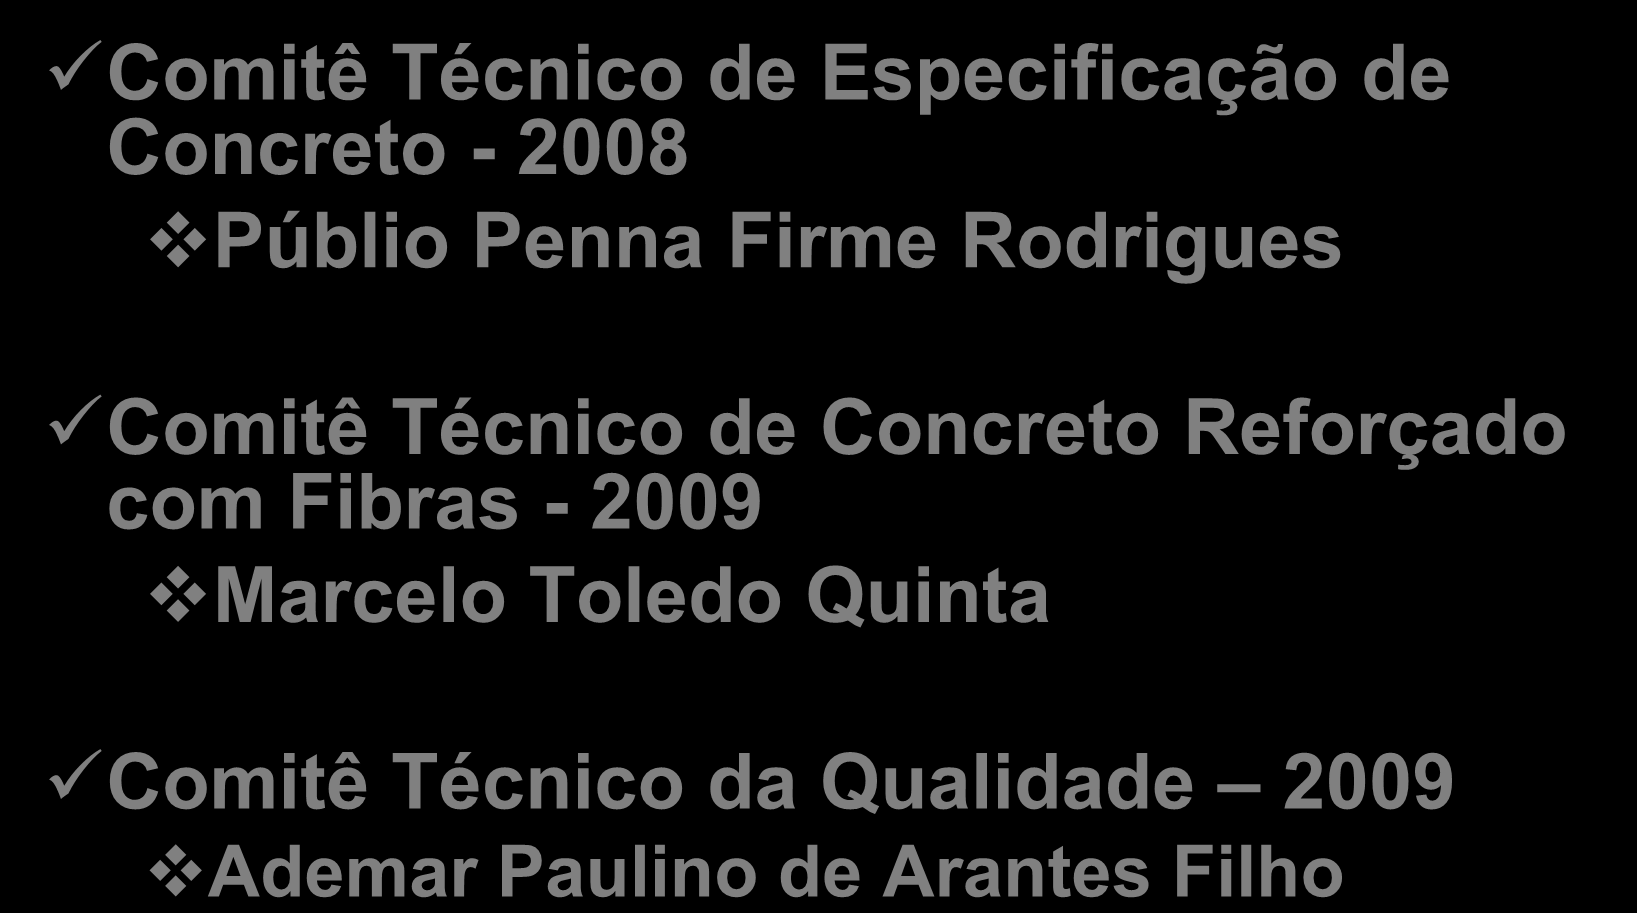 Comitês Técnicos Comitê Técnico de Especificação de Concreto - 2008 Públio Penna Firme Rodrigues Comitê Técnico de